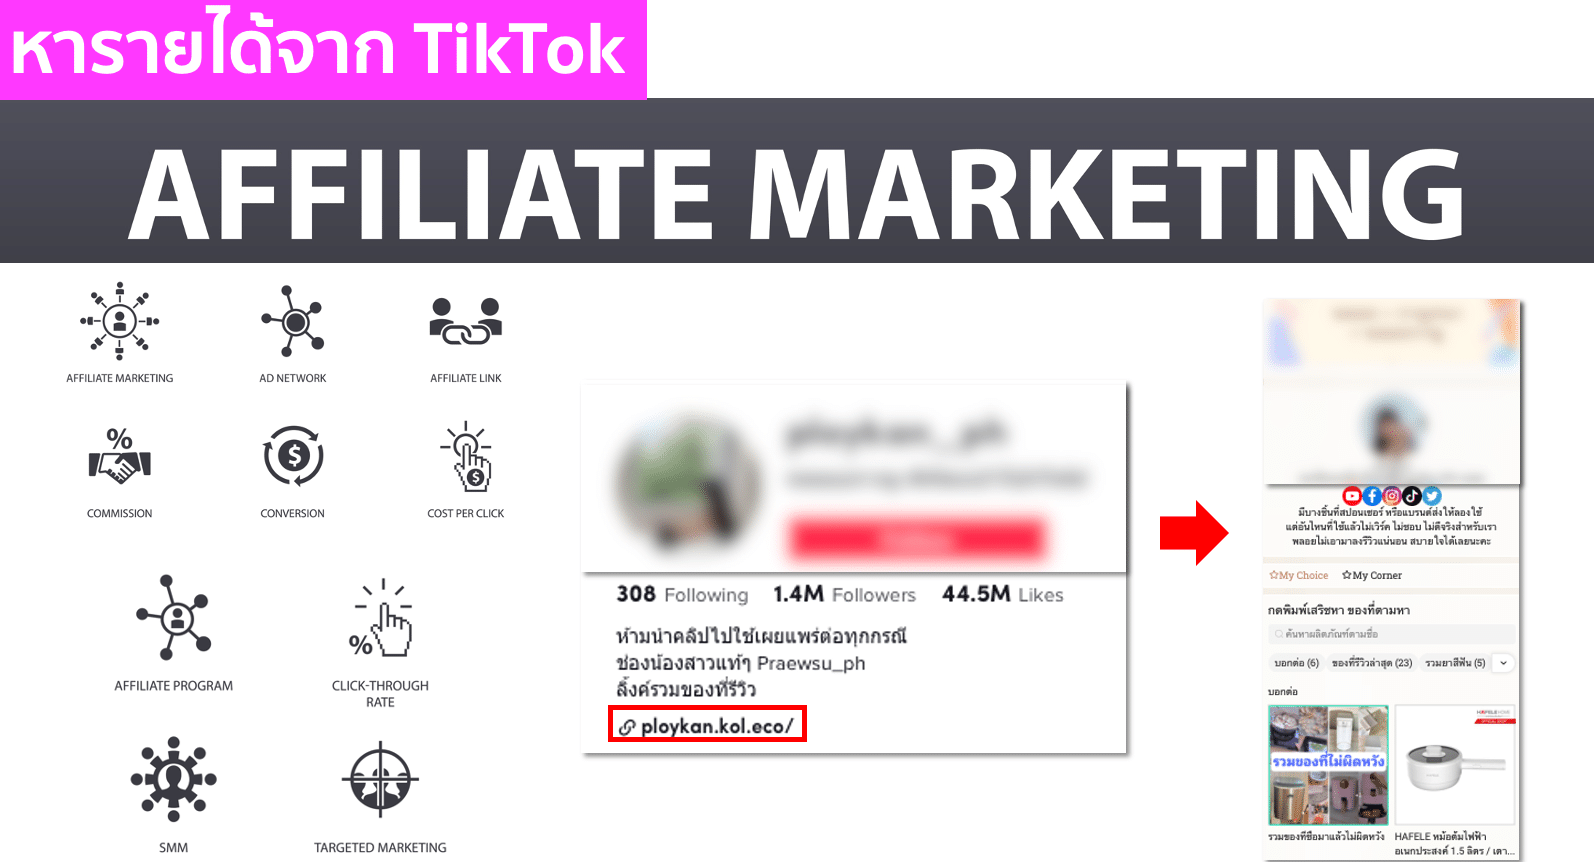 หารายได้จาก TikTok ผ่าน Affiliate Marketing ไม่ยาก! ถ้ารู้ 4 กลยุทธ์นี้